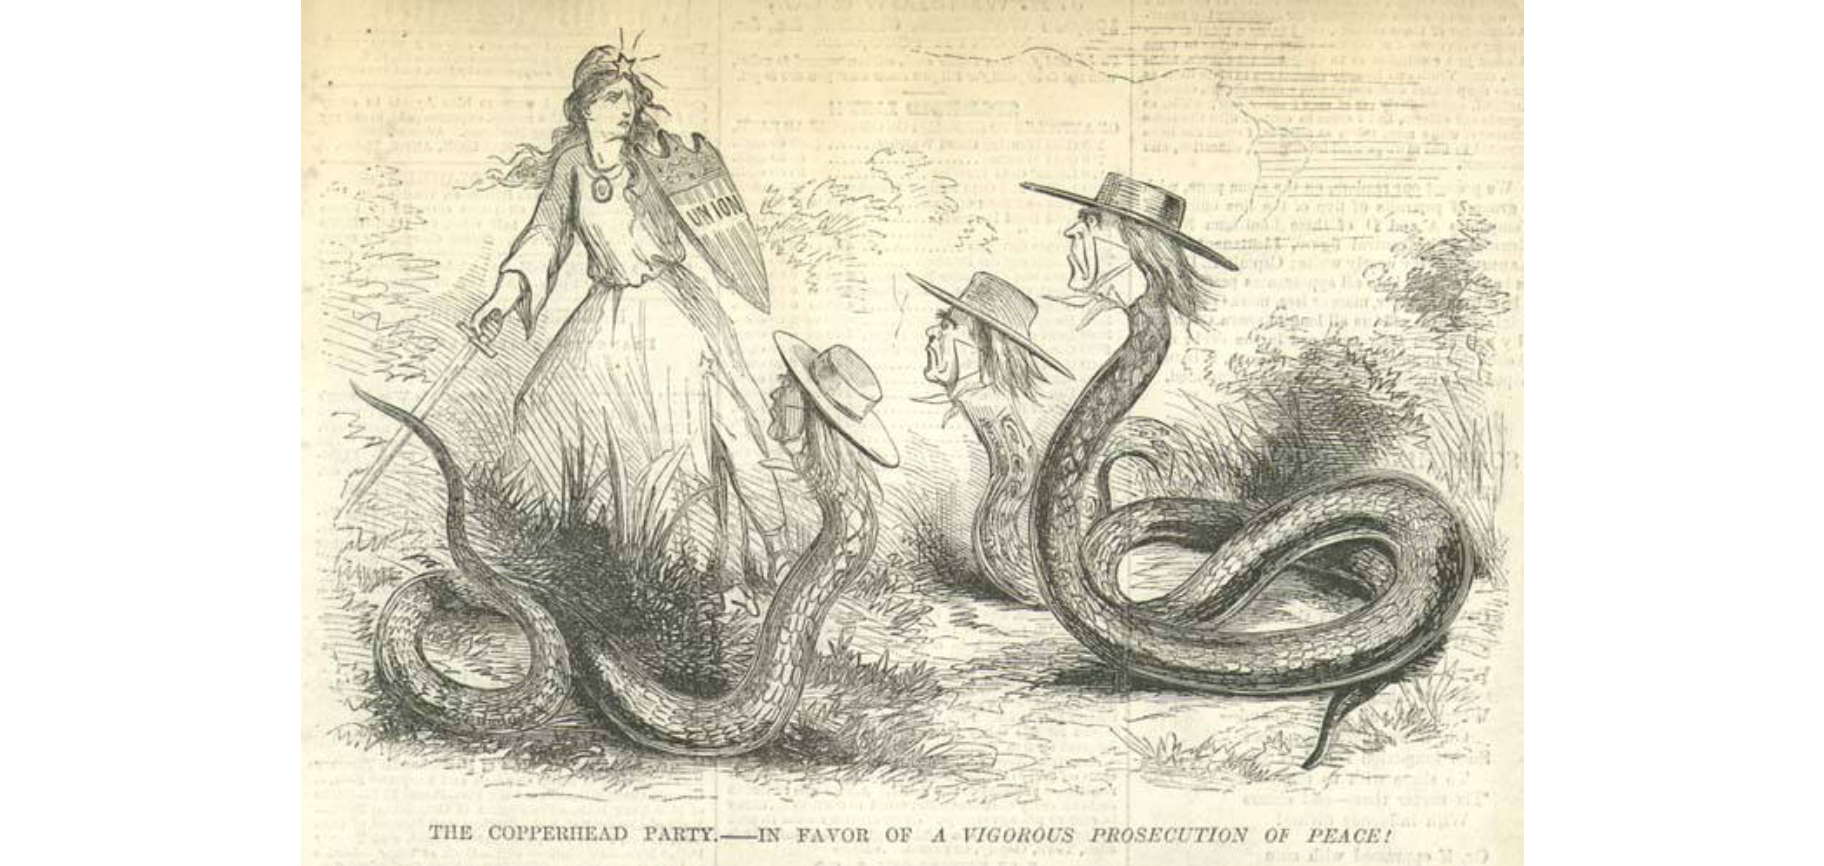 Political Cartoons, Part 3: 1850-1900 - First Amendment Museum